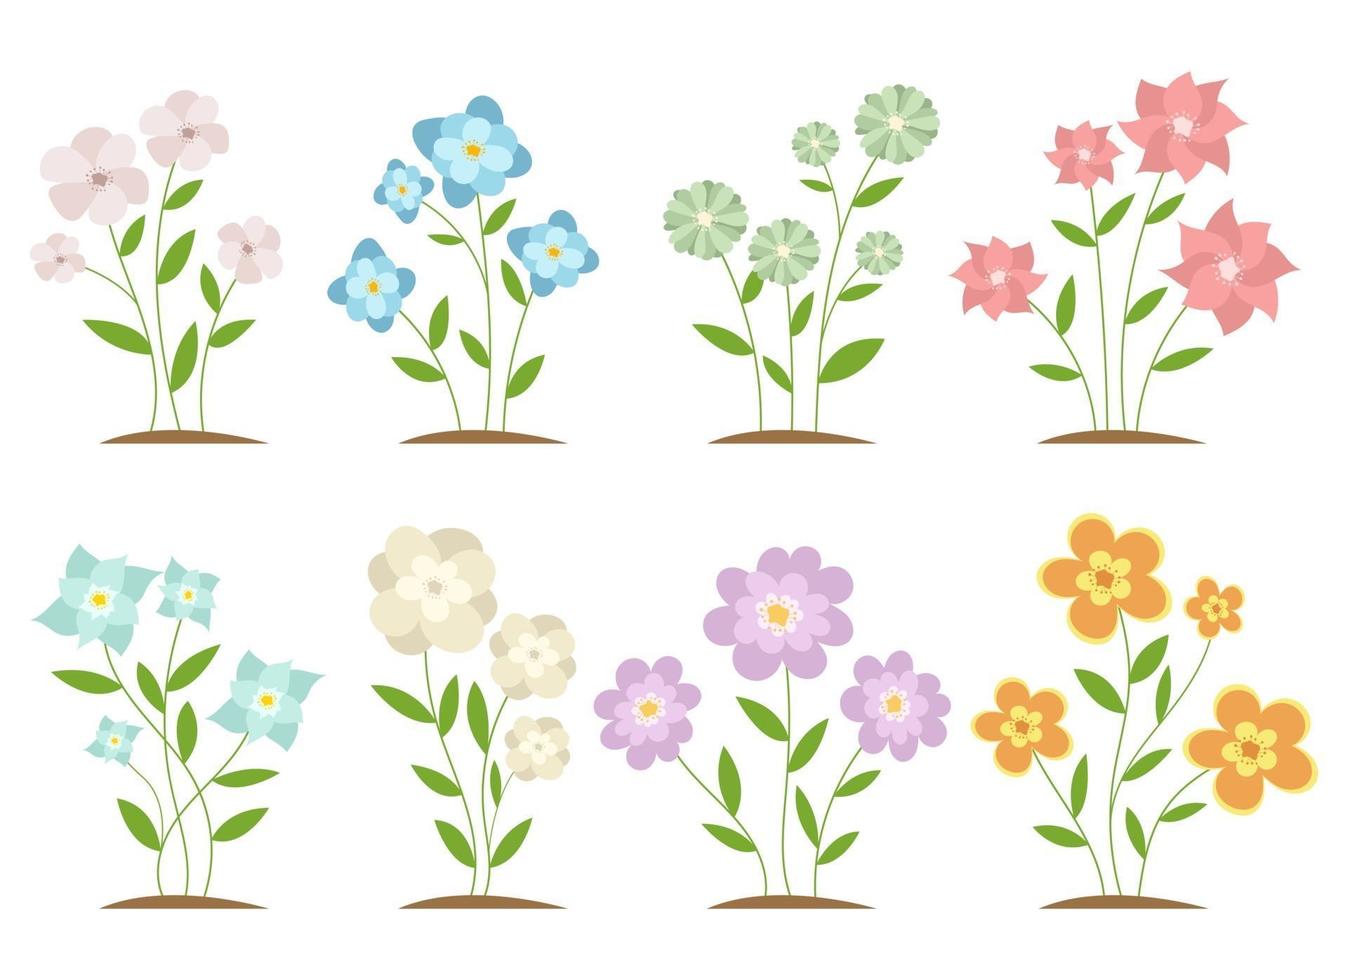 Flower vector design illustration isolated on white background